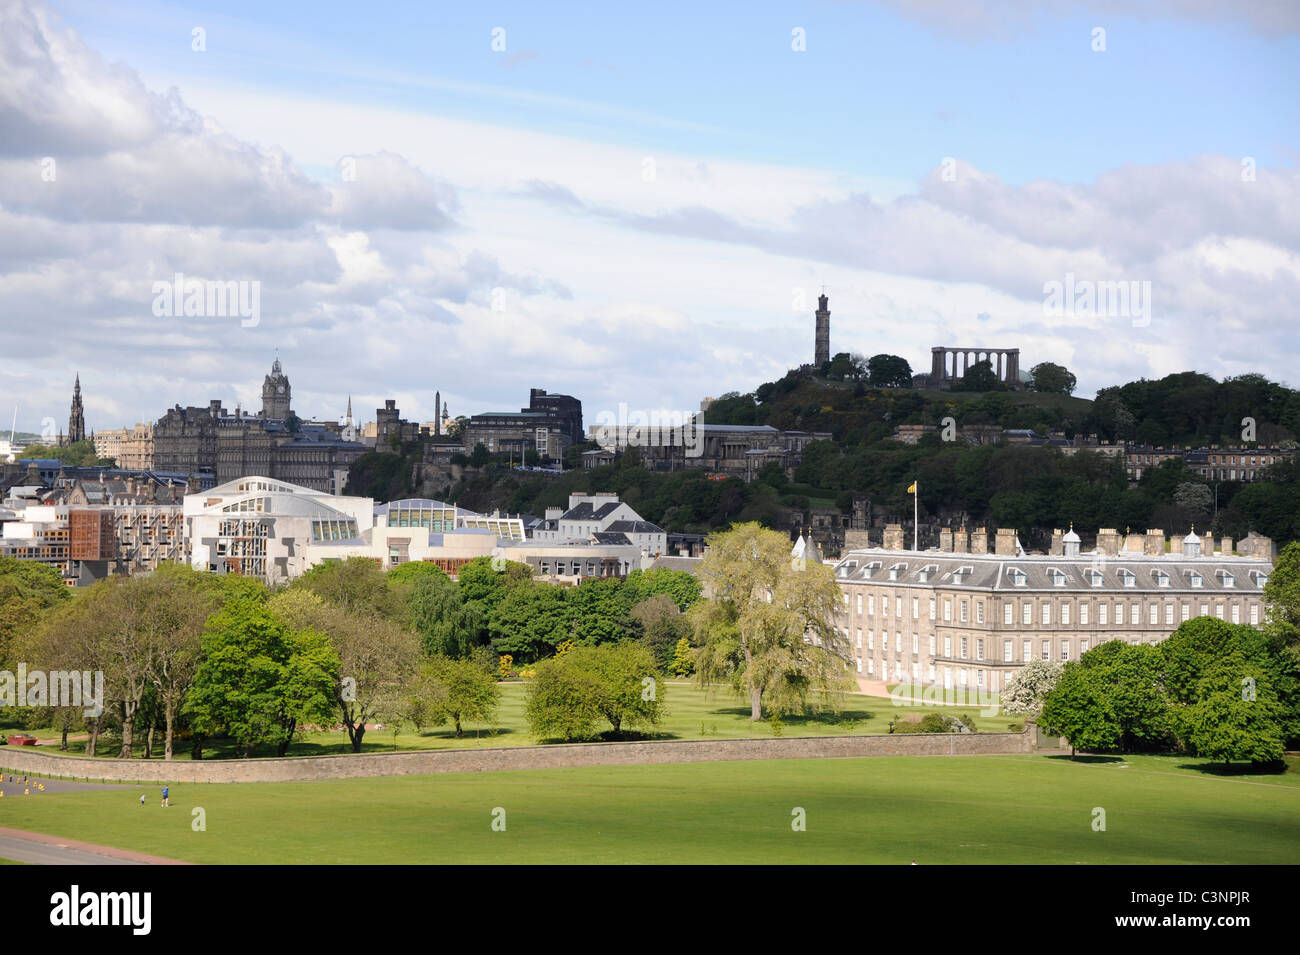 Ville d'Edimbourg avec le Parlement écossais, palais de Holyroodhouse et Calton Hill le Monument Nelson sur le dessus Banque D'Images